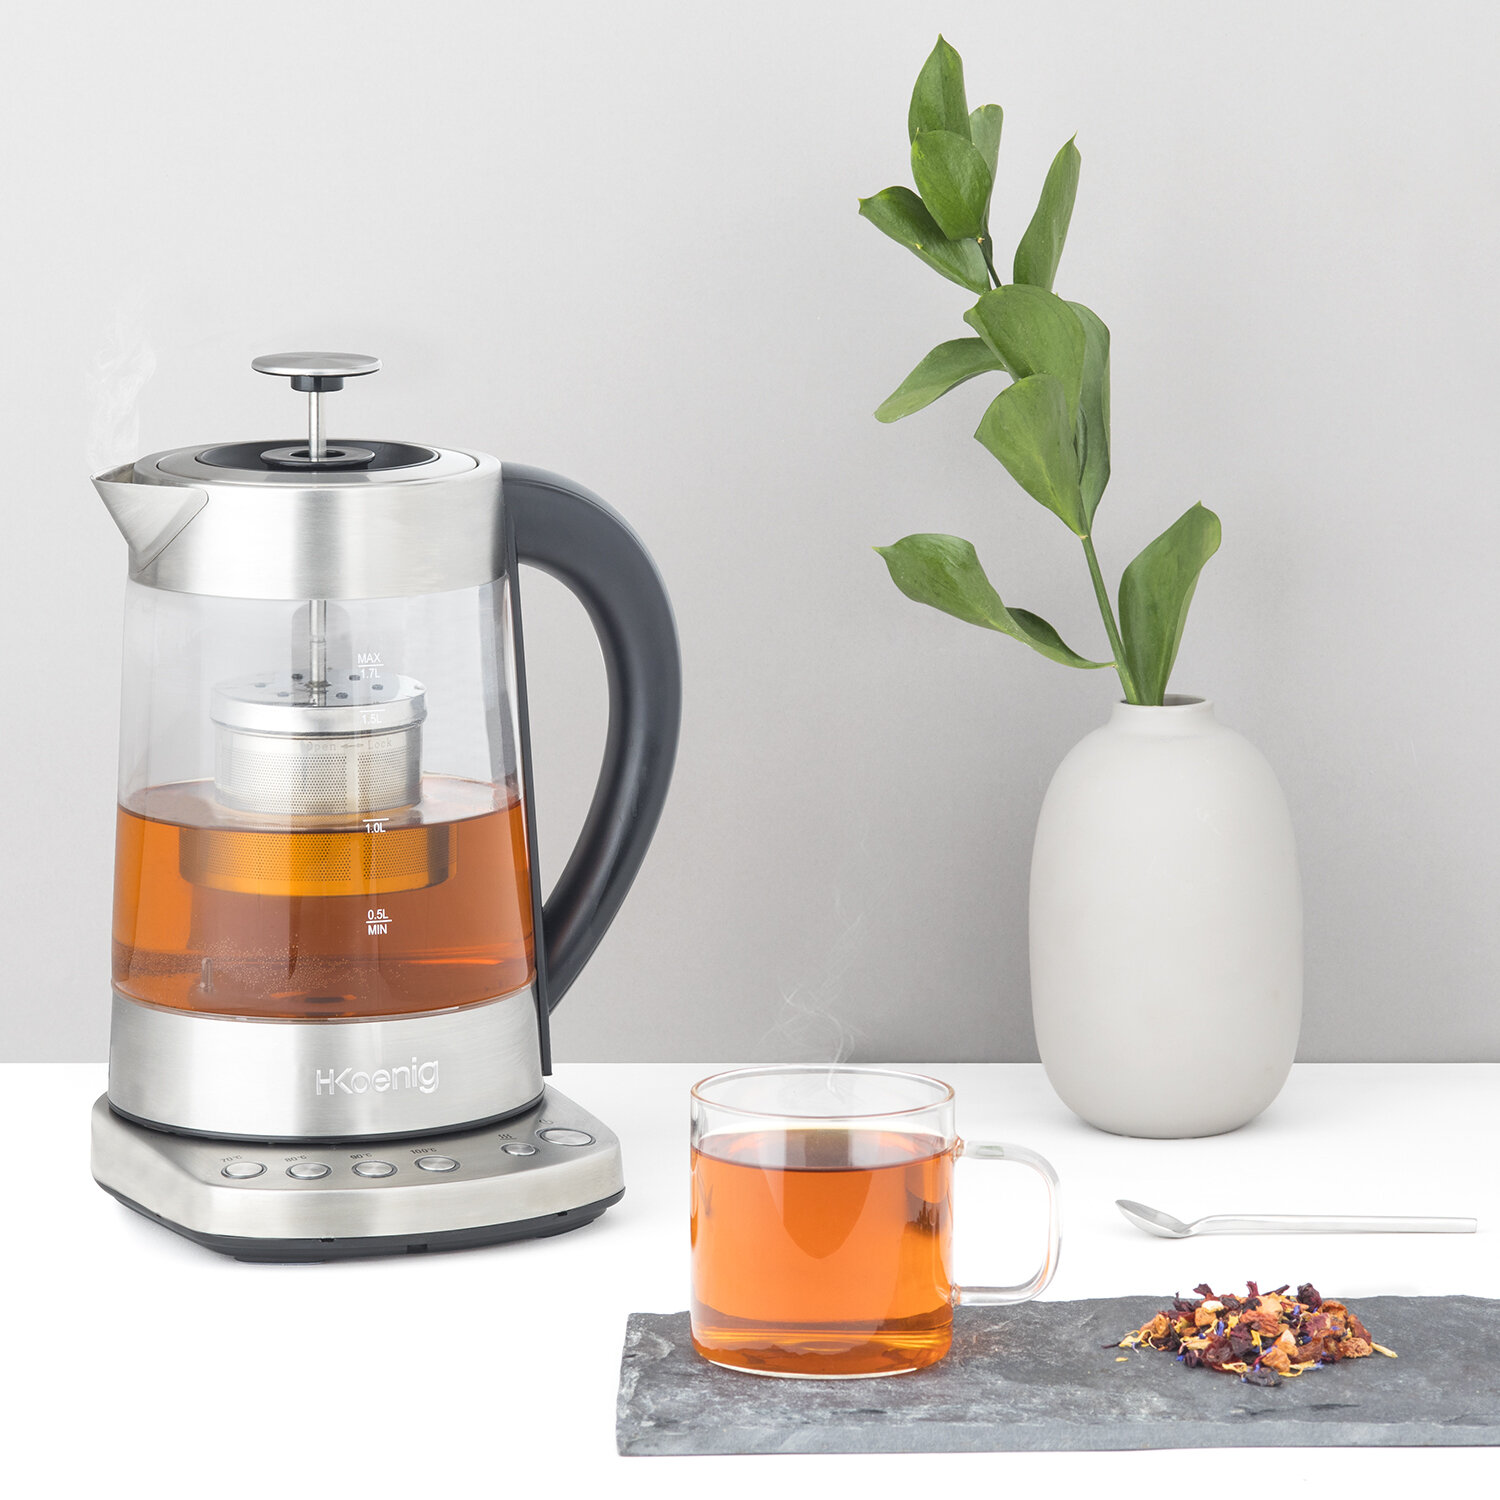 Nuestros productos > Desayuno > máquina de café : Koenig - ES